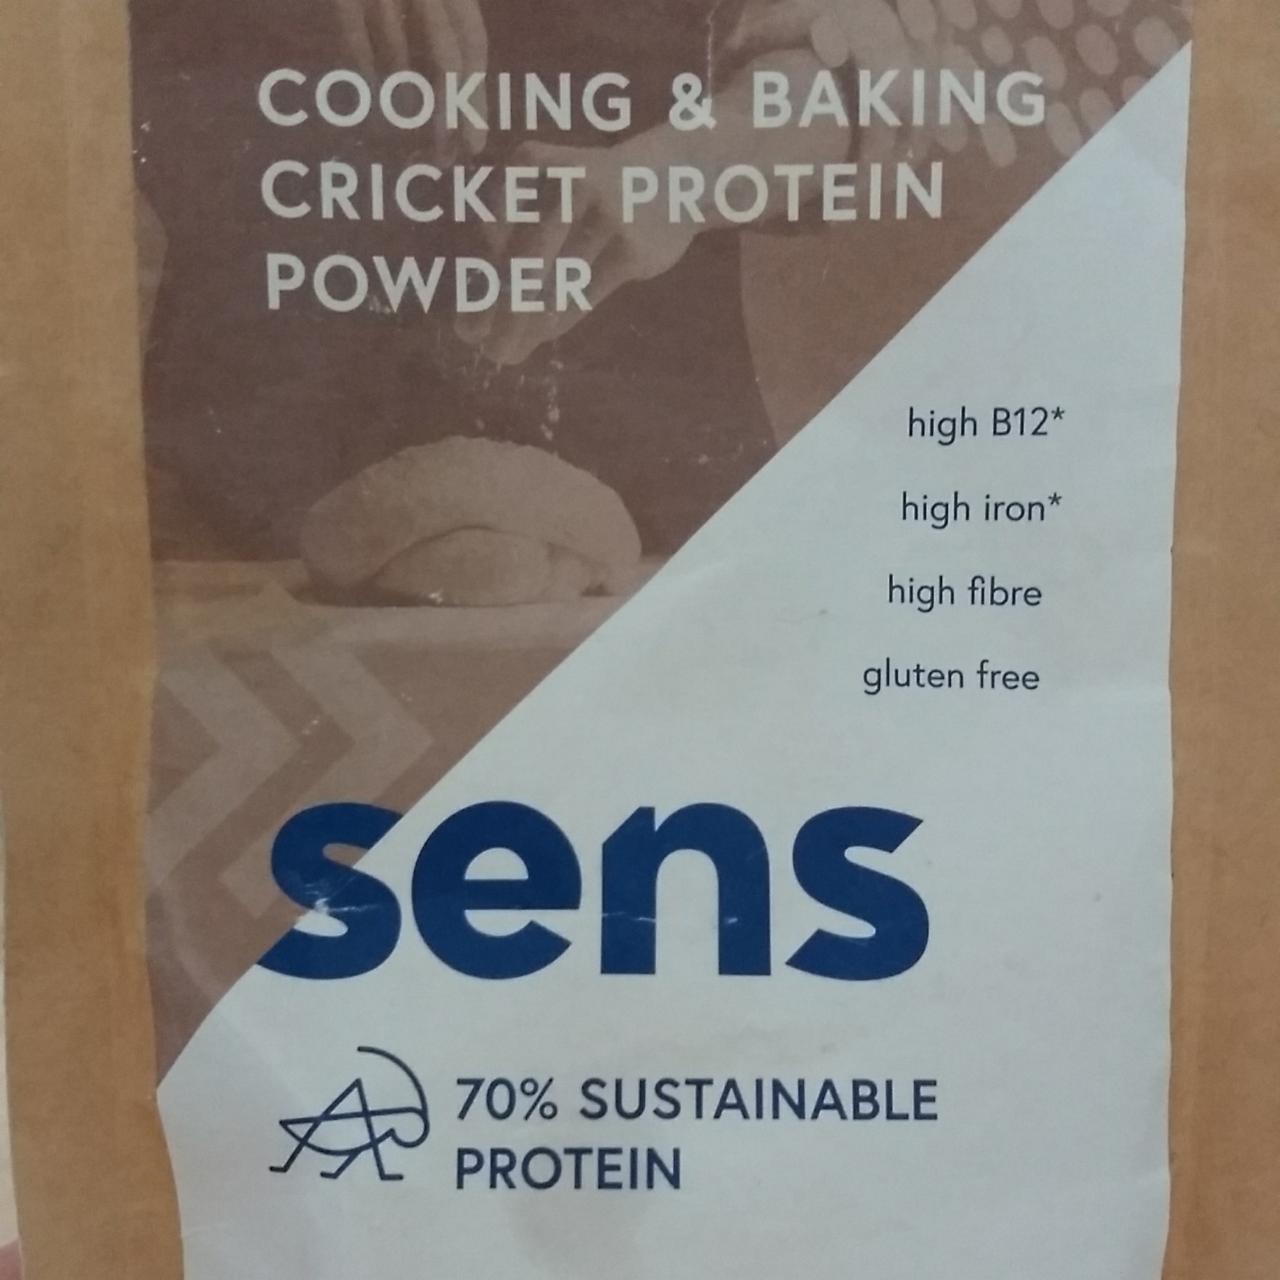 Fotografie - Cooking & baking cricket protein powder